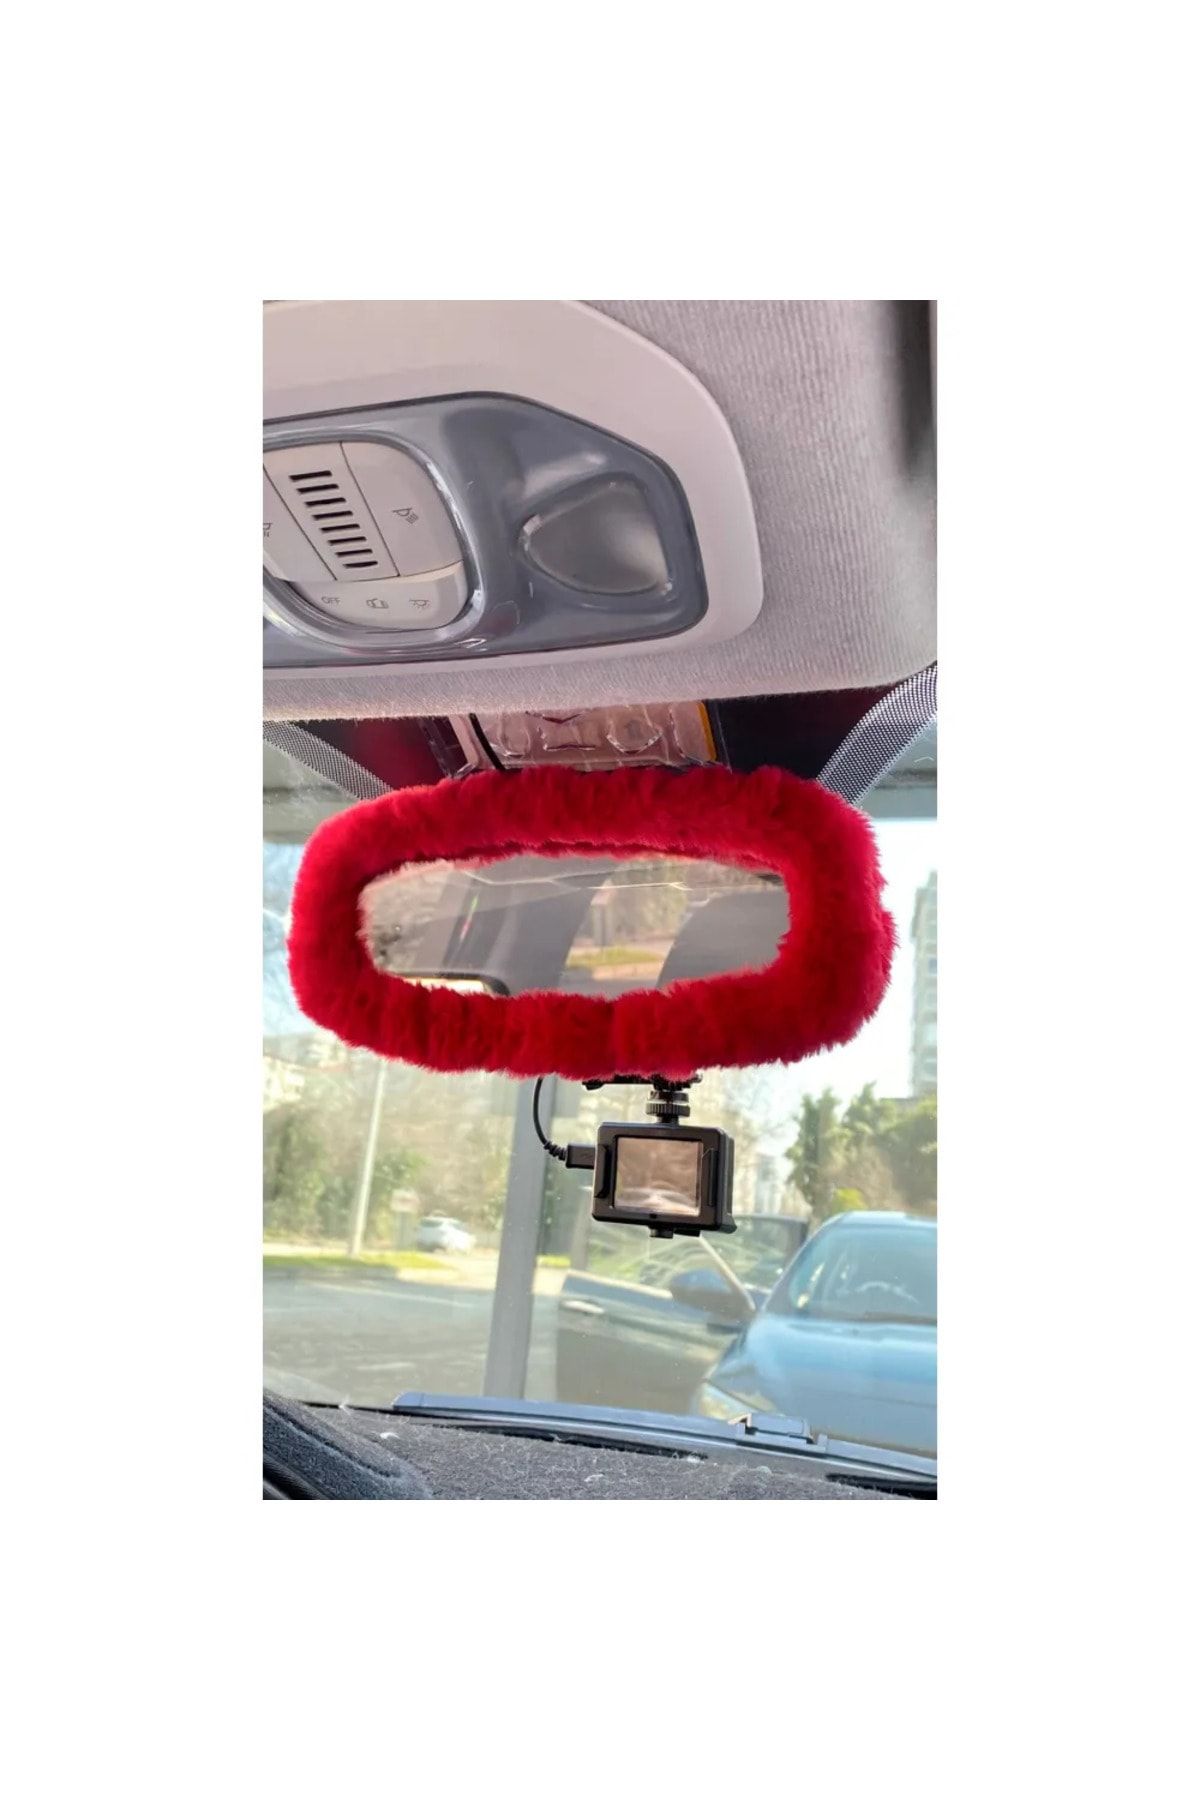 Genel Markalar Peluş Dikiz Ayna Kılıfı Süs Ayna Süsü Tüm Araçlara Uyumludur Kırmızı